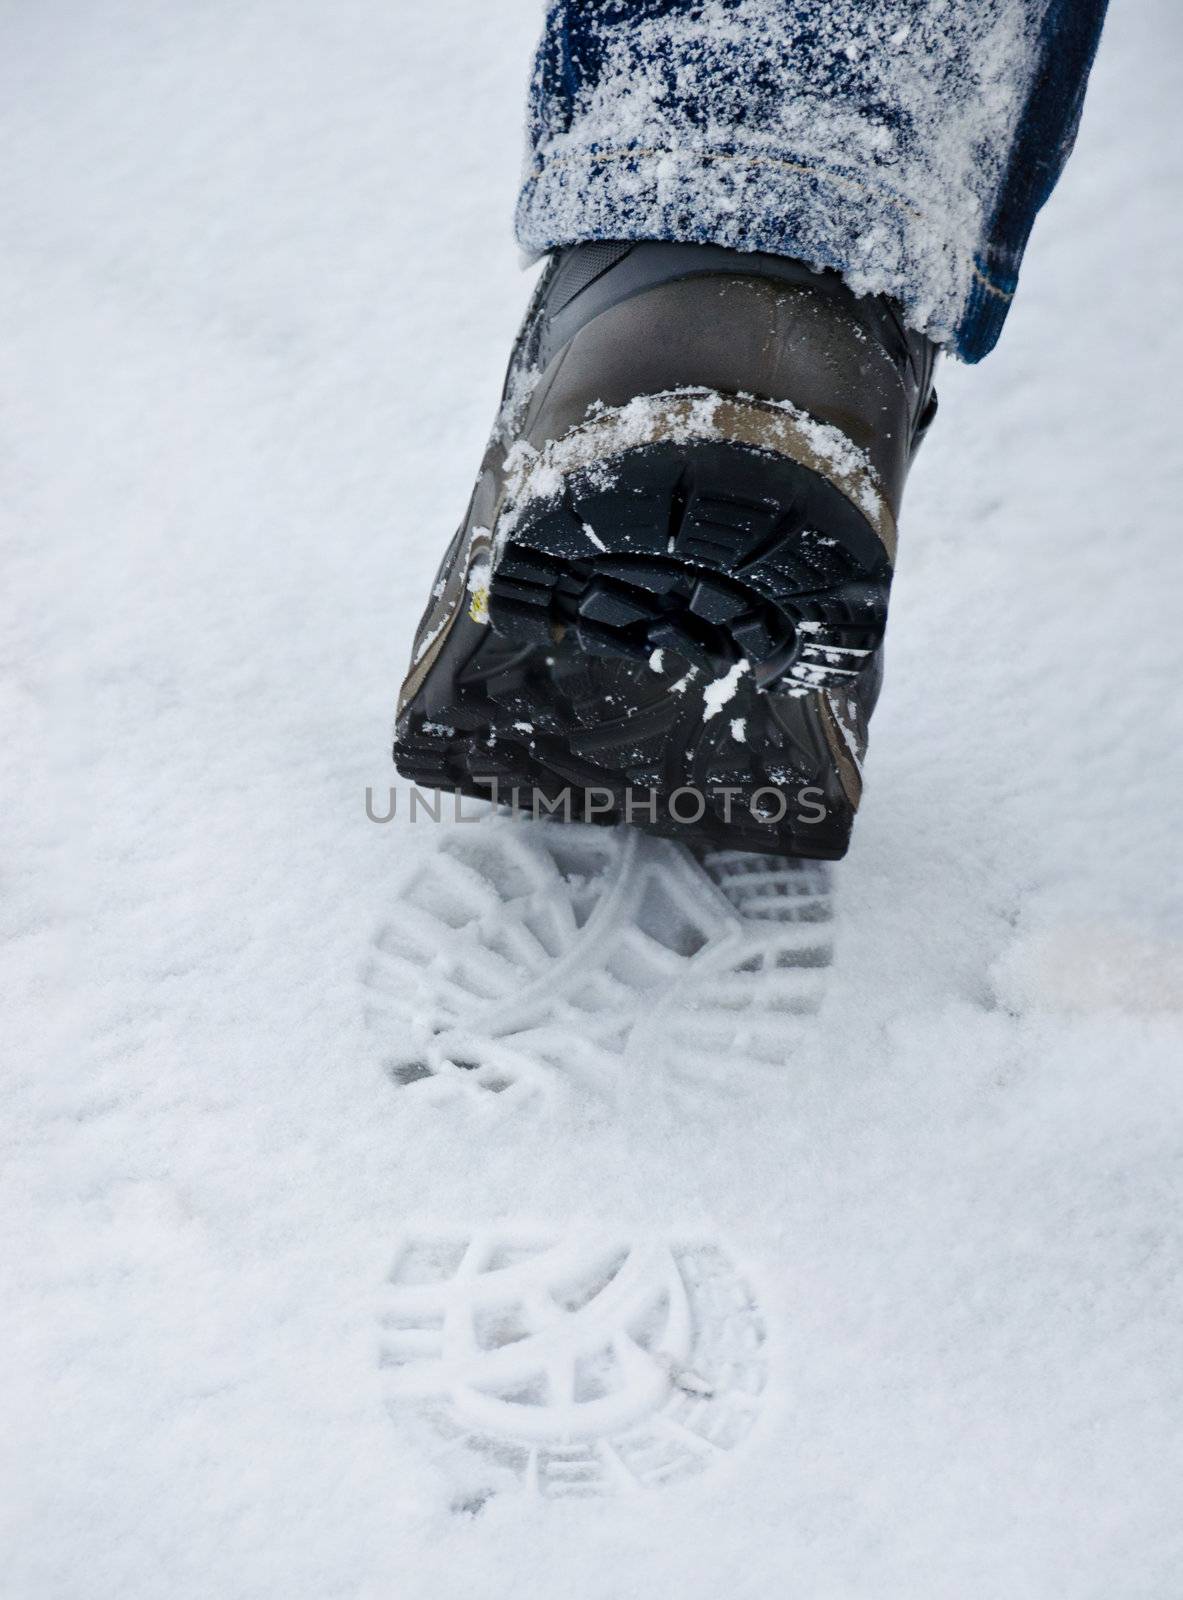 footprint in the snow by Sergieiev